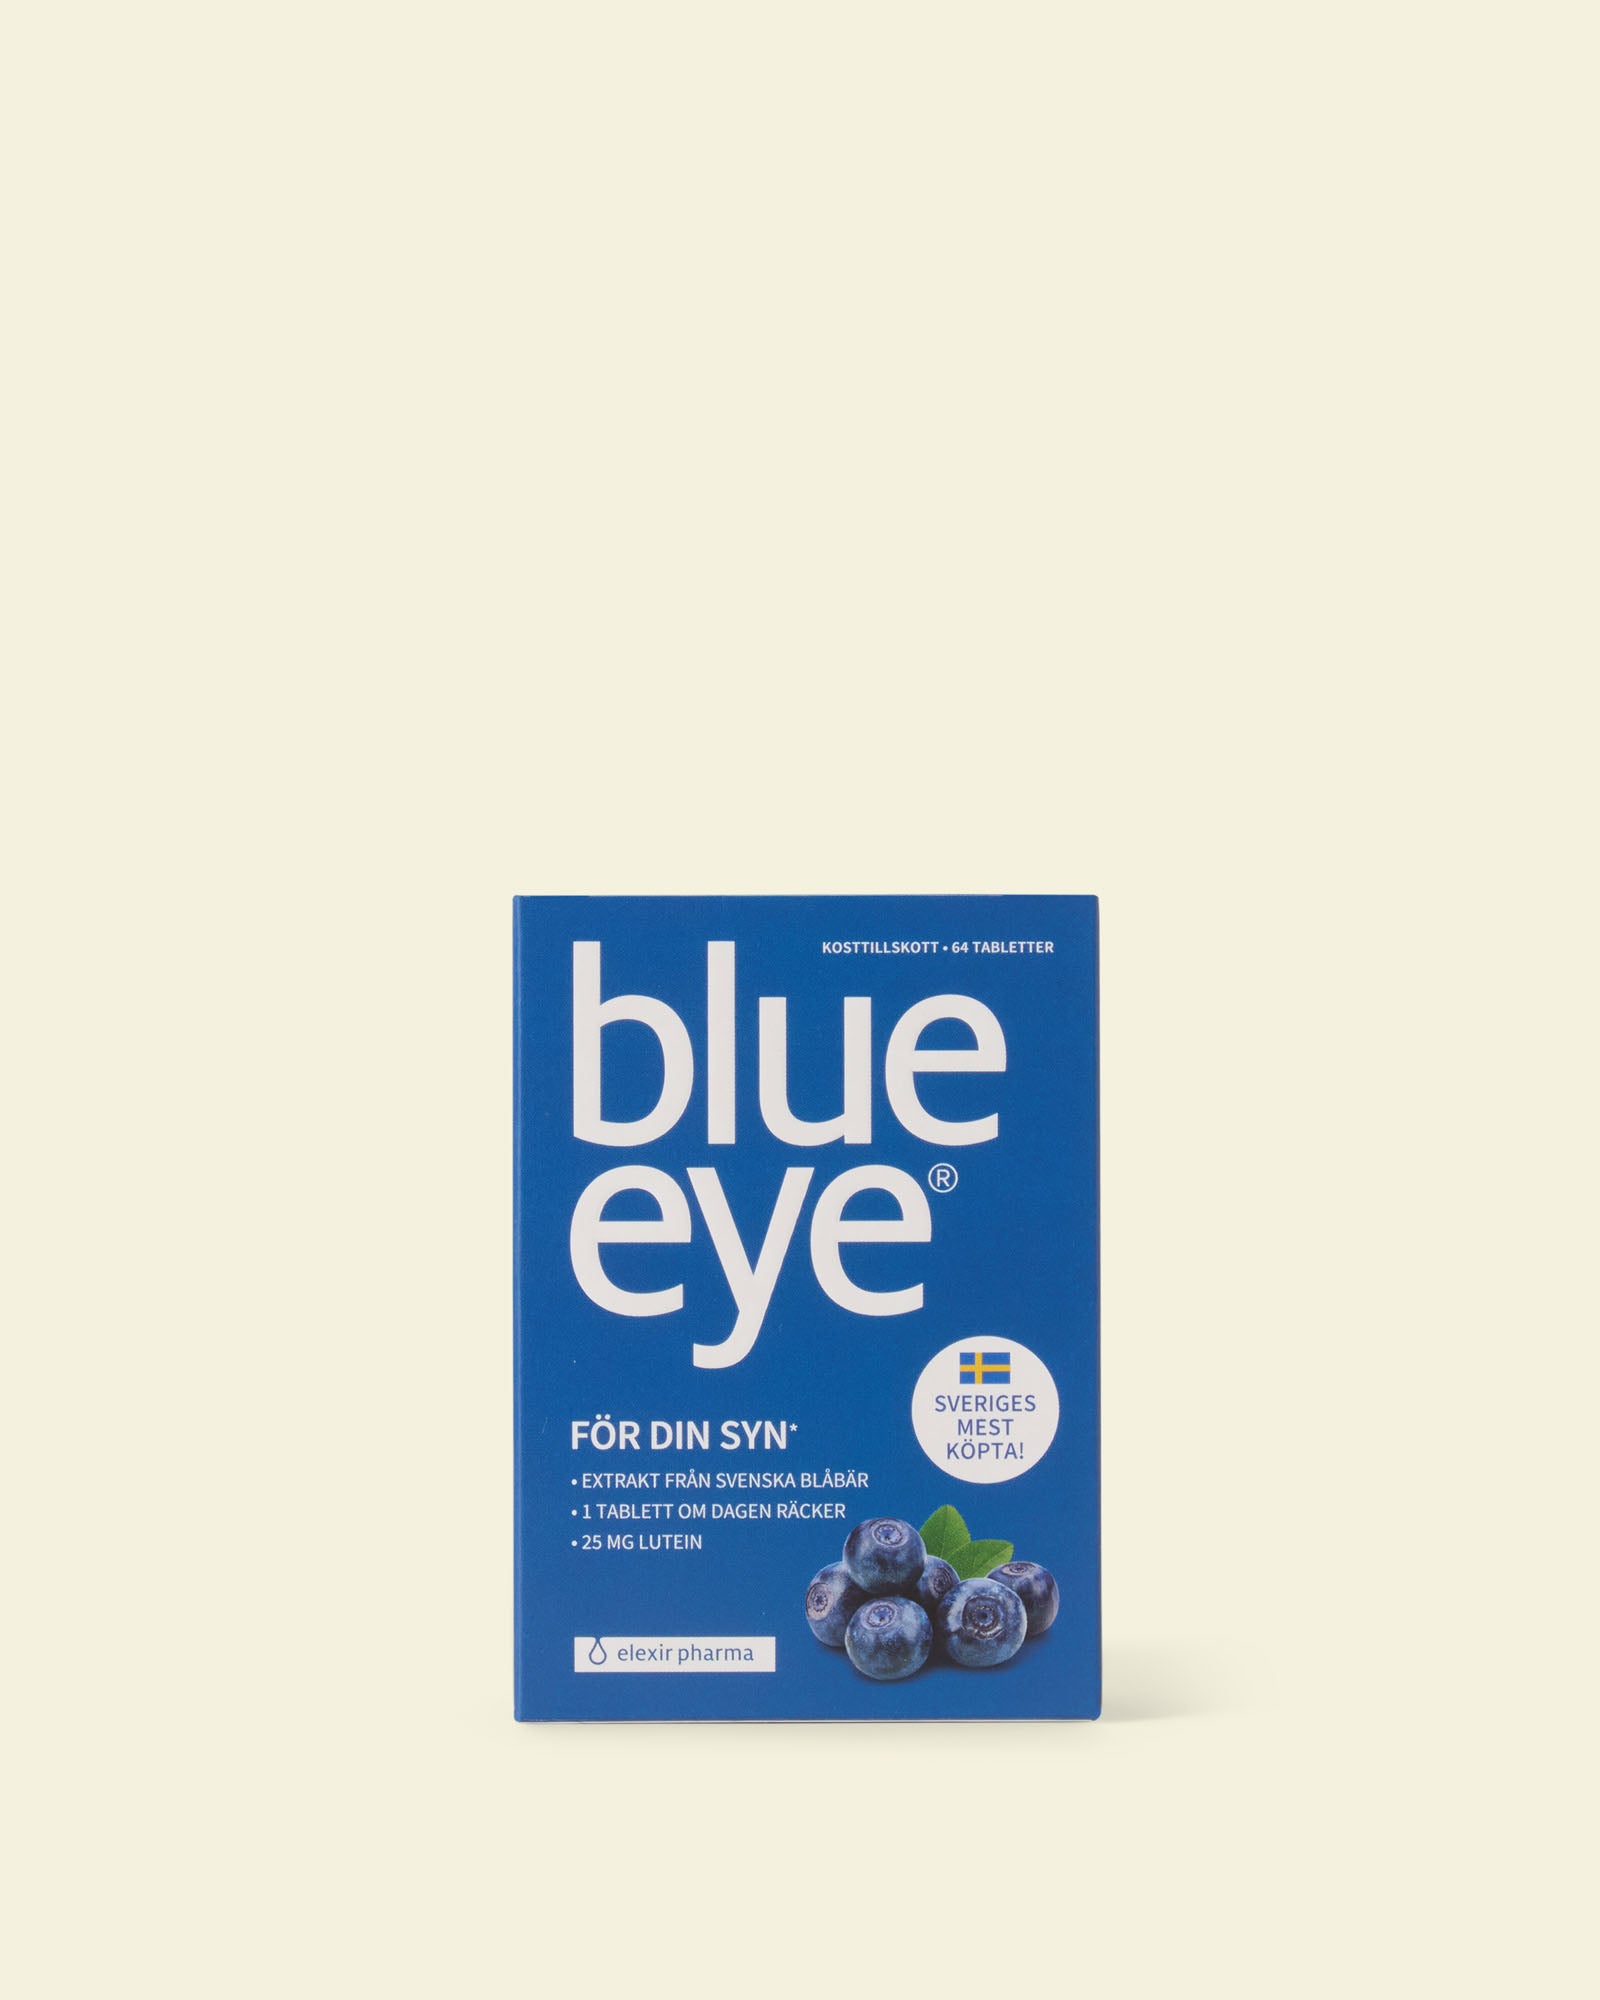 Blue eye card image